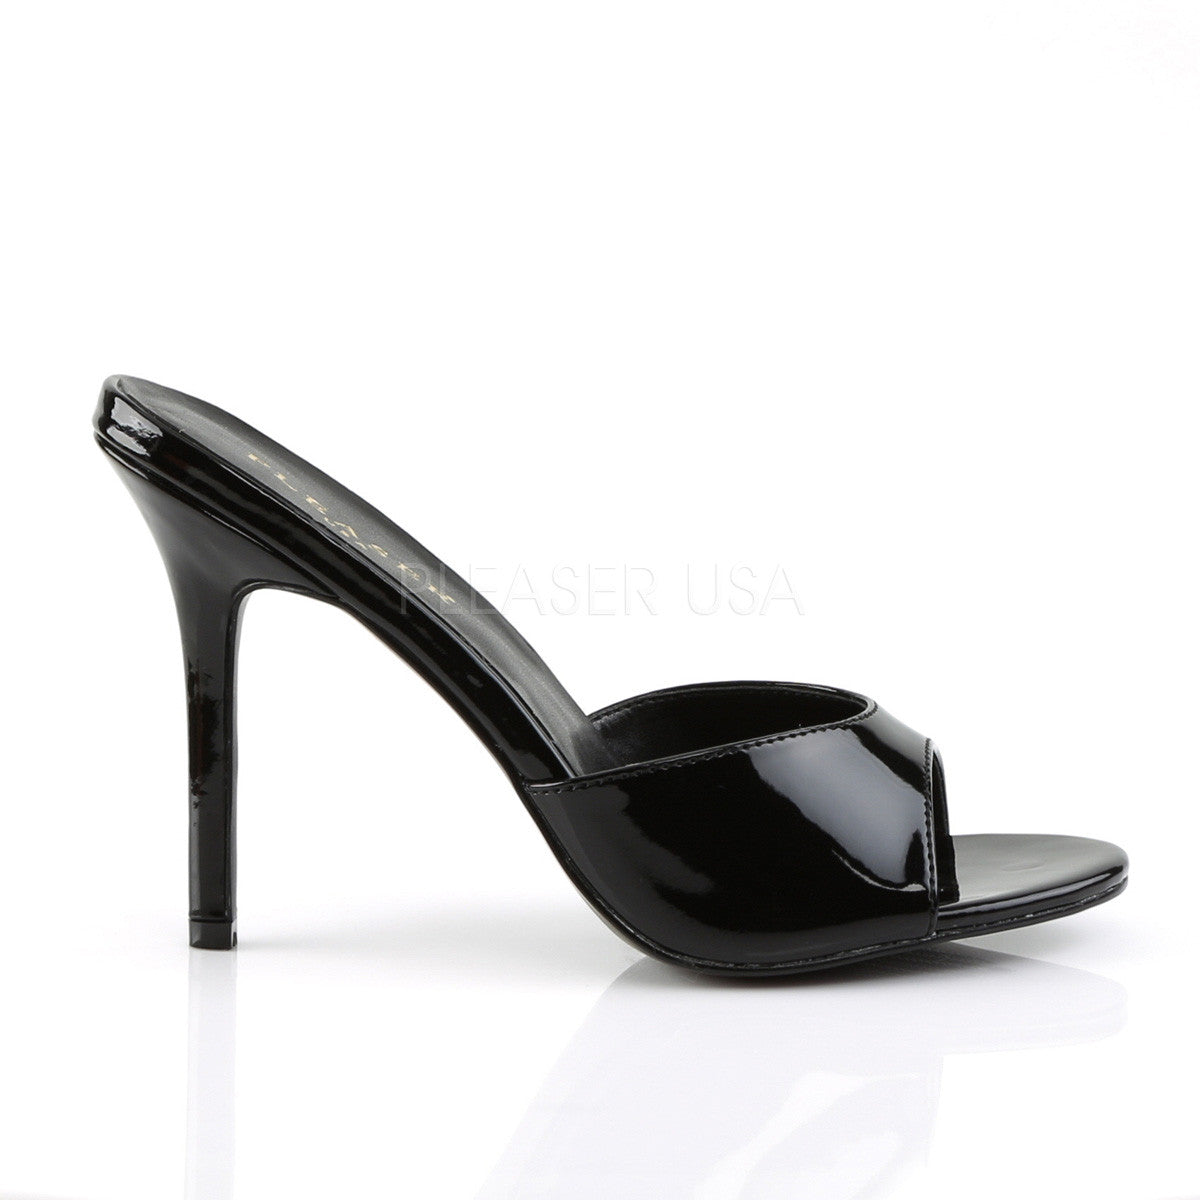 Pleaser CLASSIQUE-01 Black Pat Slides - Shoecup.com - 5